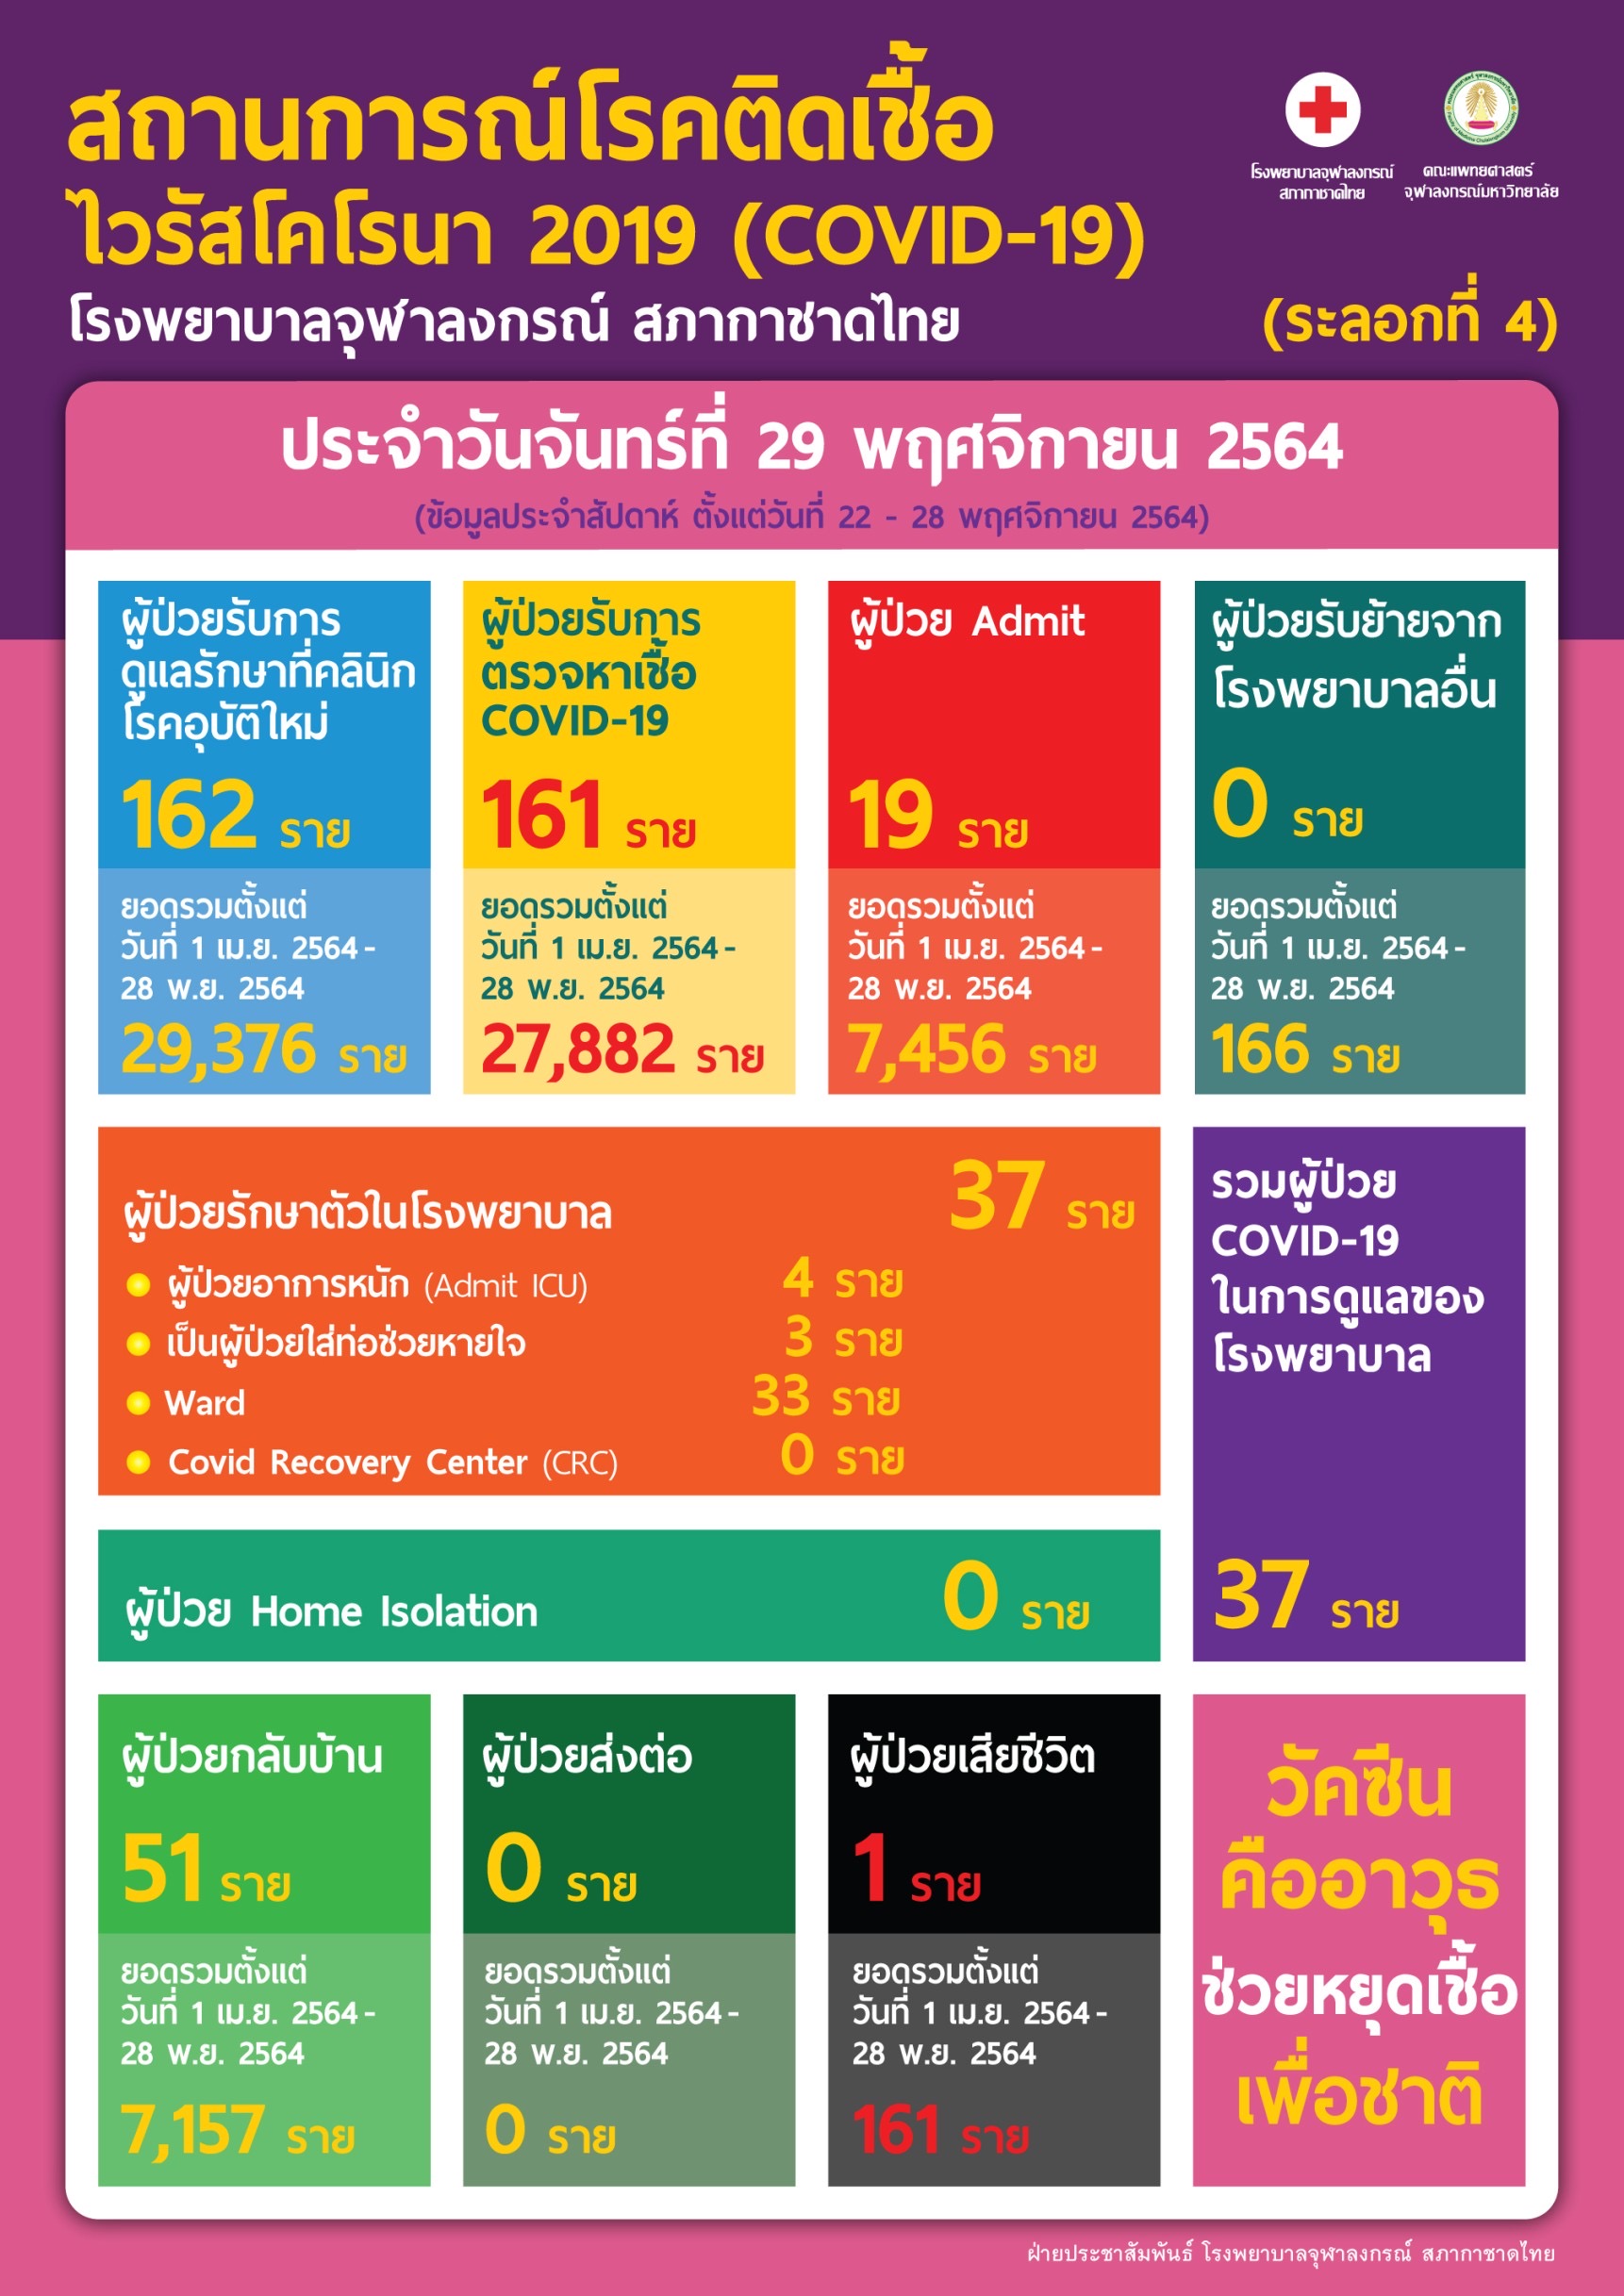 สถานการณ์โรคติดเชื้อไวรัสโคโรนา 2019 (COVID-19)(ระลอกที่ 4)โรงพยาบาลจุฬาลงกรณ์ สภากาชาดไทย ประจำวันจันทร์ที่ 29 พฤศจิกายน 2564